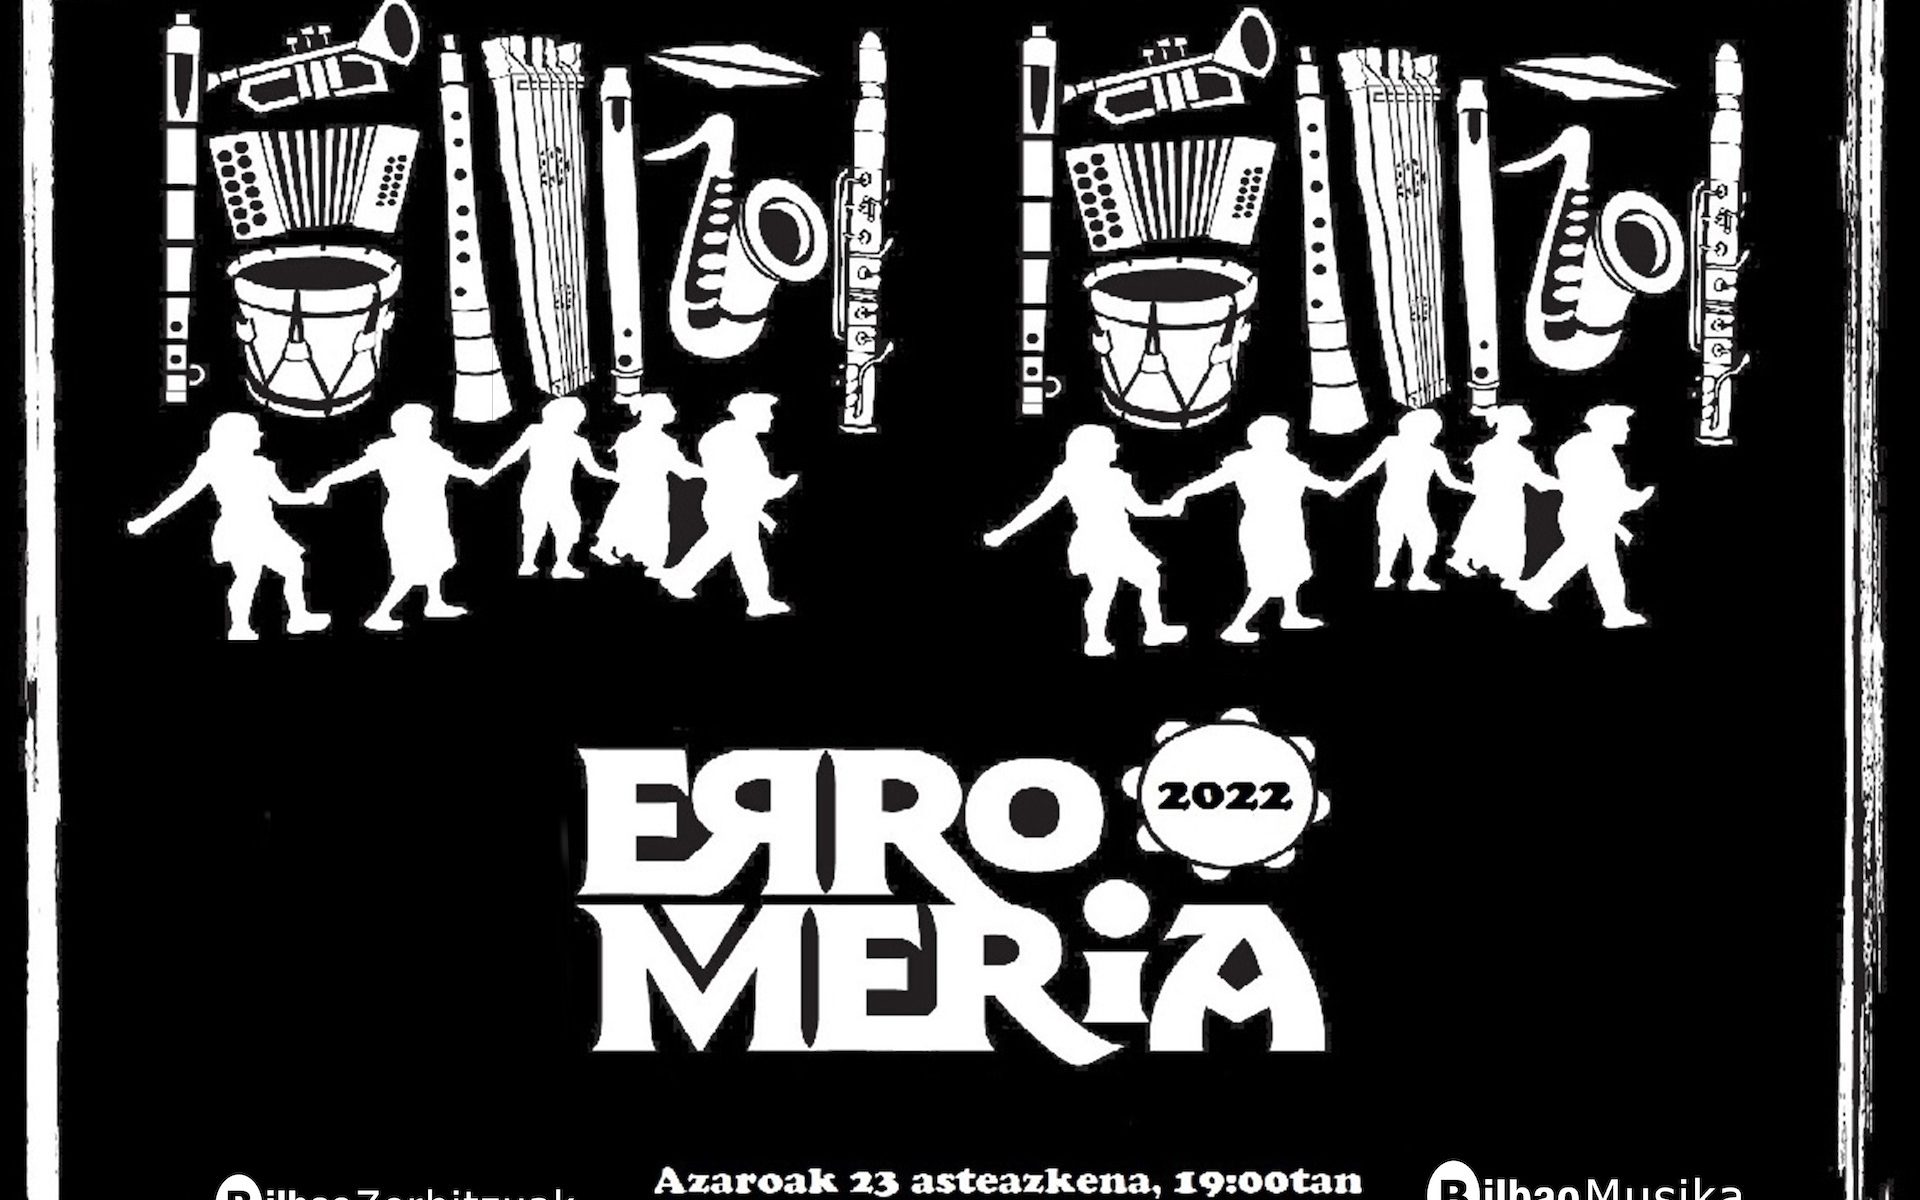 Cartel de la Romería organizada por Bilbao Musika Eskola